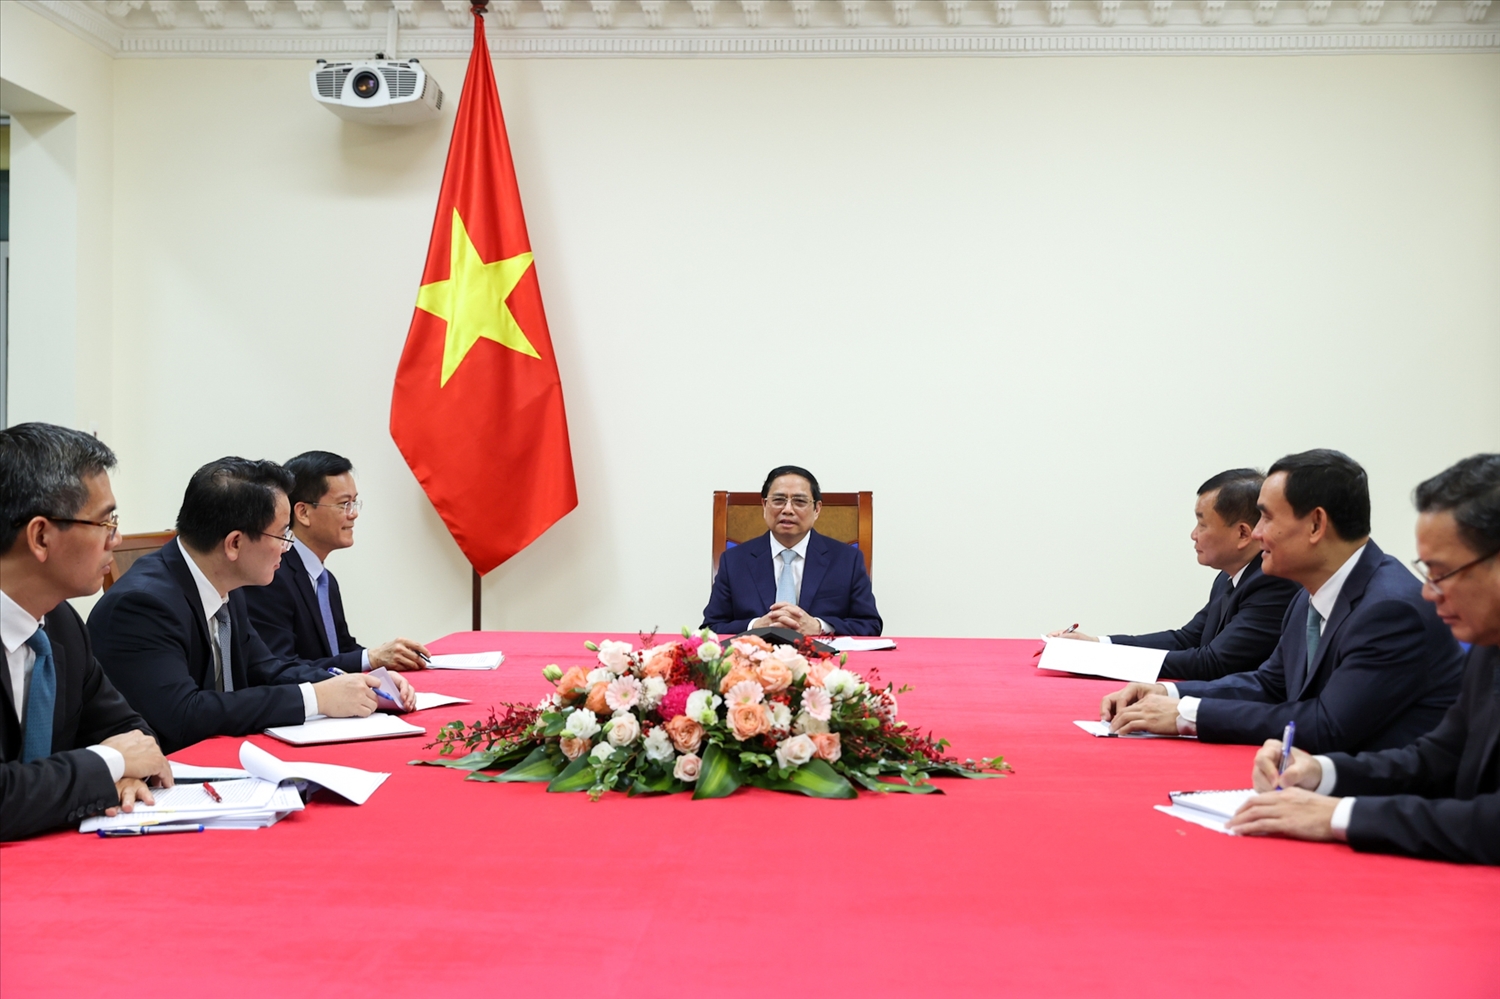 Thủ tướng Phạm Minh Chính trao đổi các biện pháp tăng cường quan hệ Đối tác chiến lược Việt Nam - Pháp, nhất là trong lĩnh vực hợp tác kinh tế, thương mại, đầu tư - Ảnh: VGP/Nhật Bắc